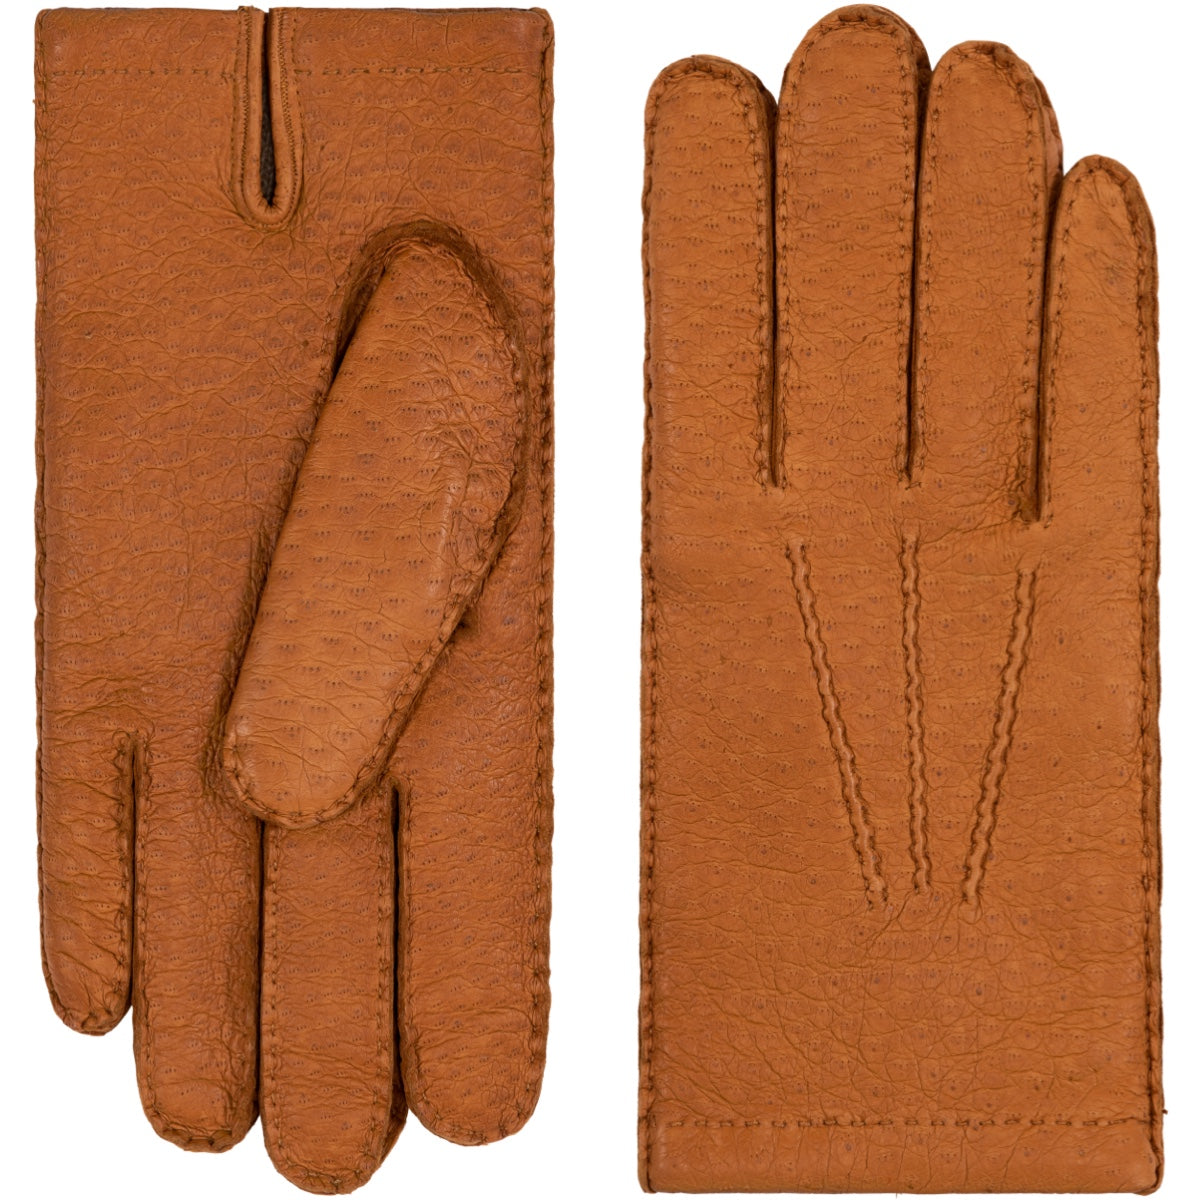 Kaschmirfutter Antonio Peccary-Leder - mit (Braun) Handschuhe aus